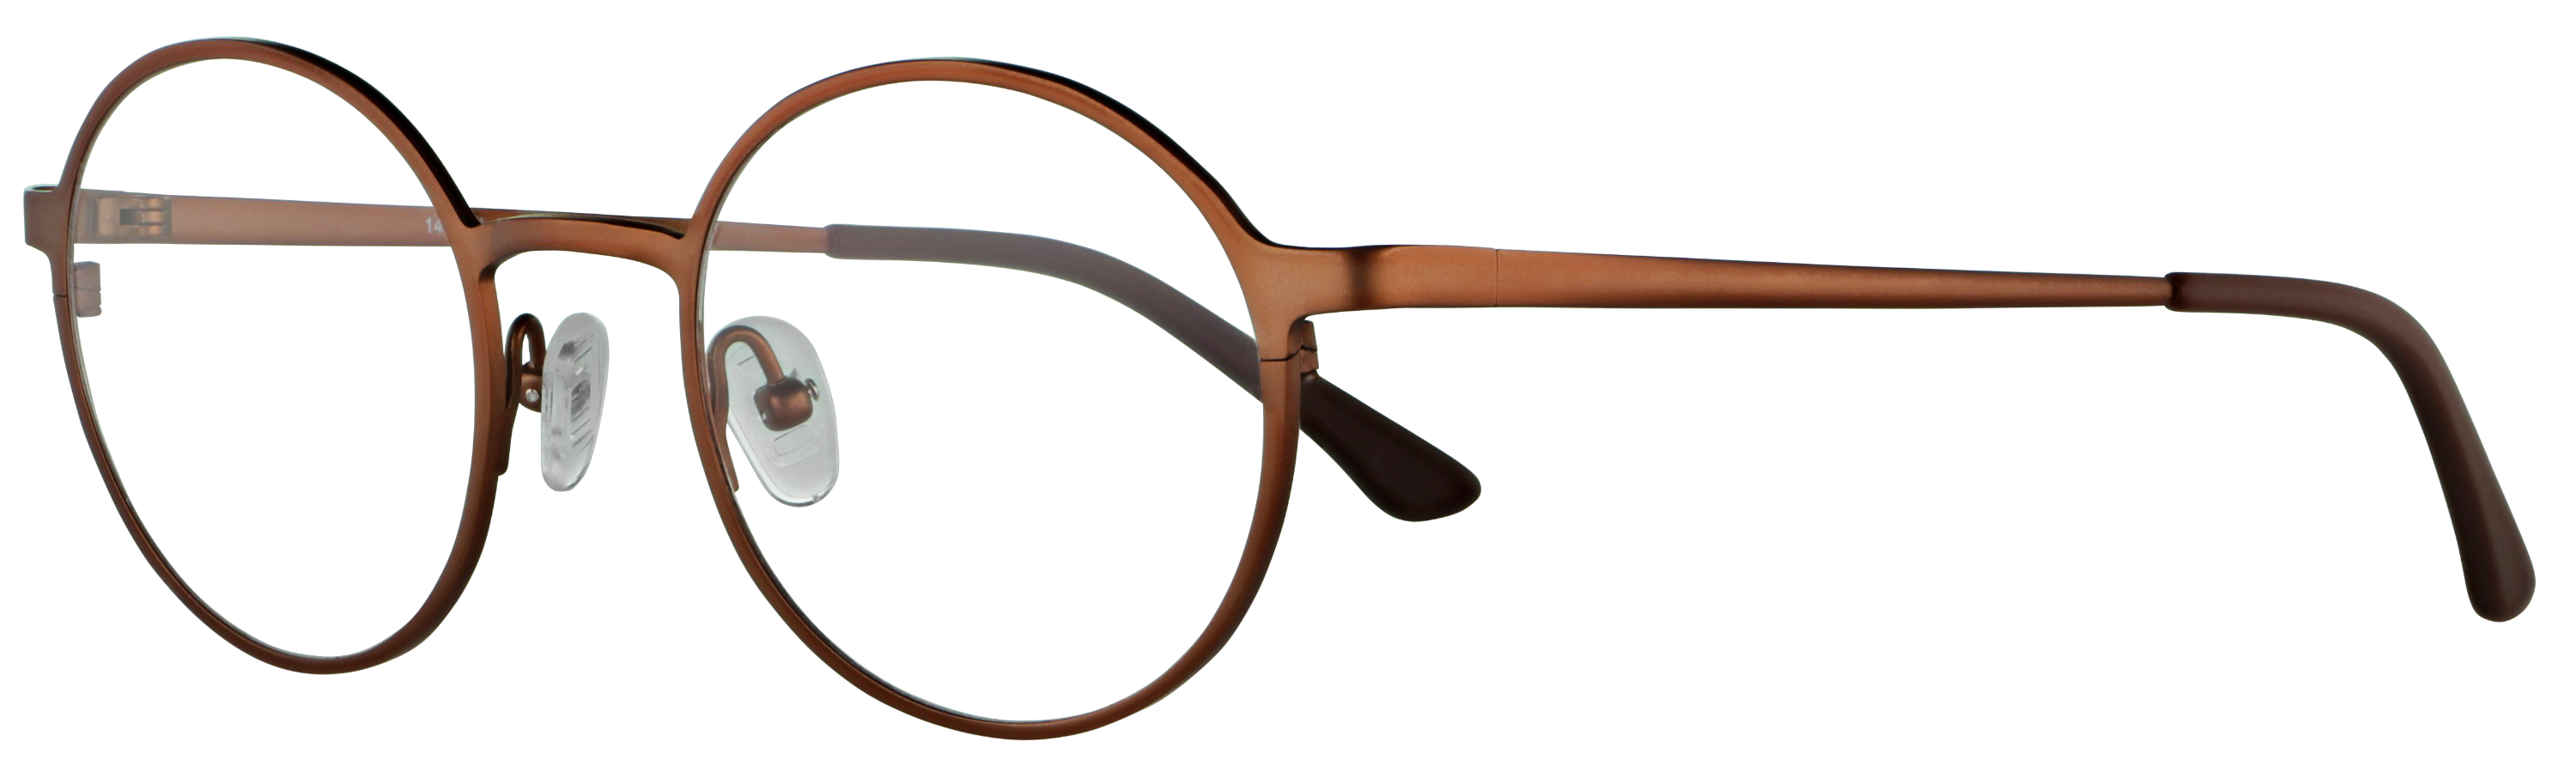 Das Bild zeigt die Korrektionsbrille 141381 von der Marke Abele Optik in bronze.